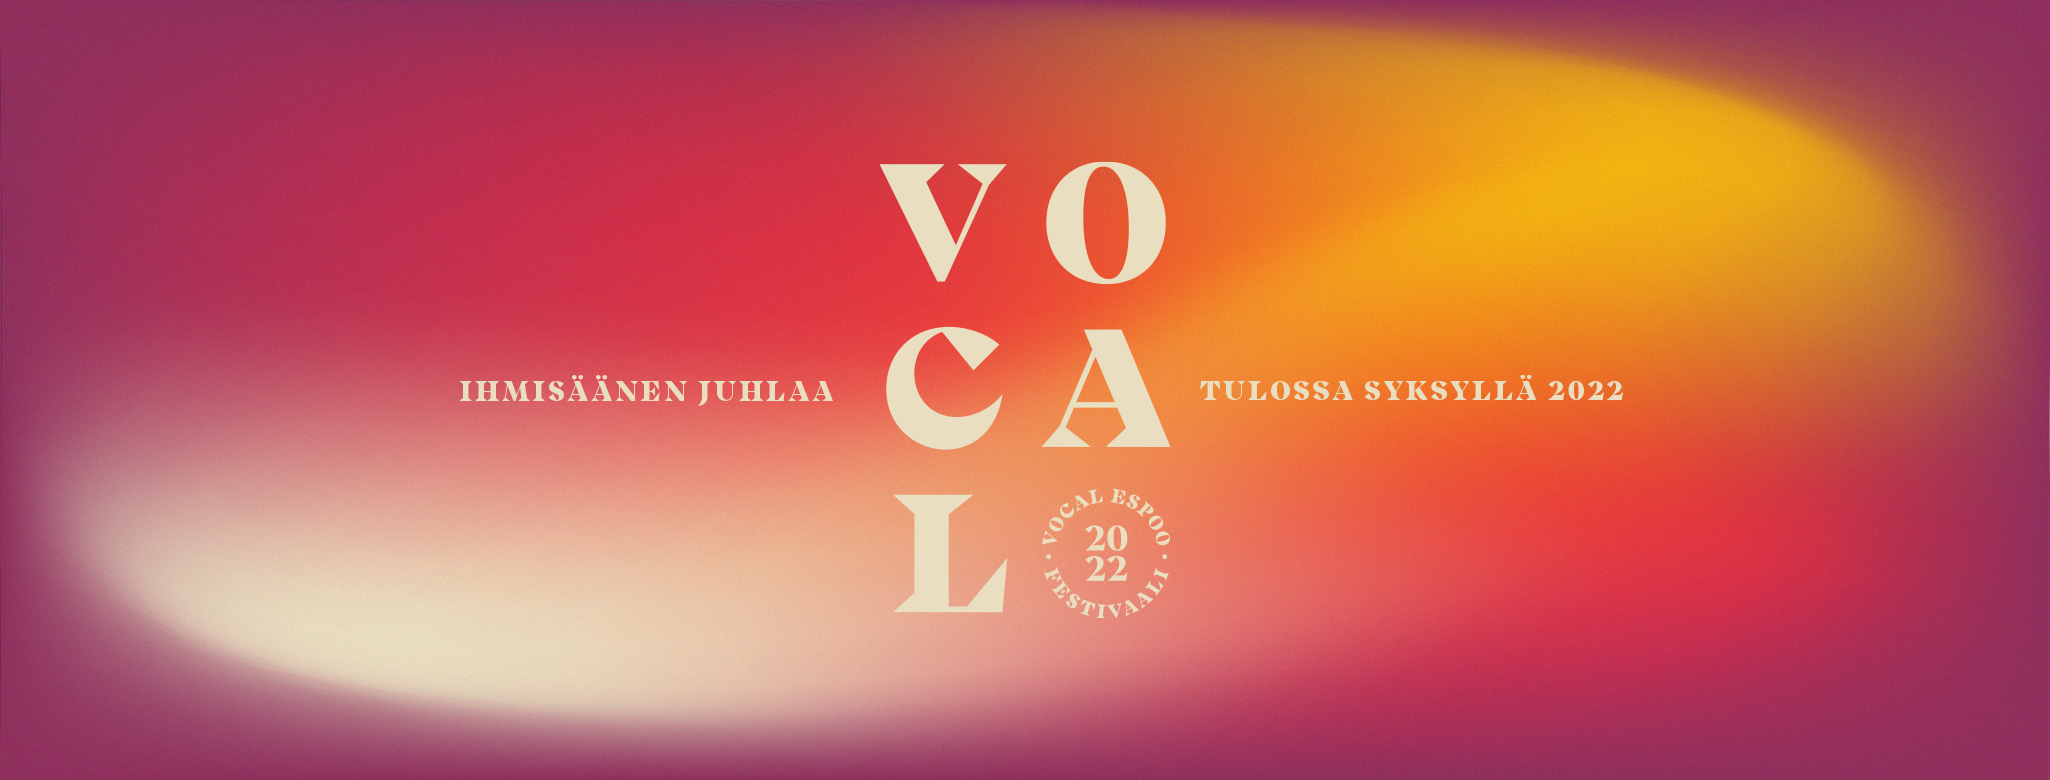 VocalEspoo festivaali, ihmisäänen juhlaa tulossa syksyllä 2022